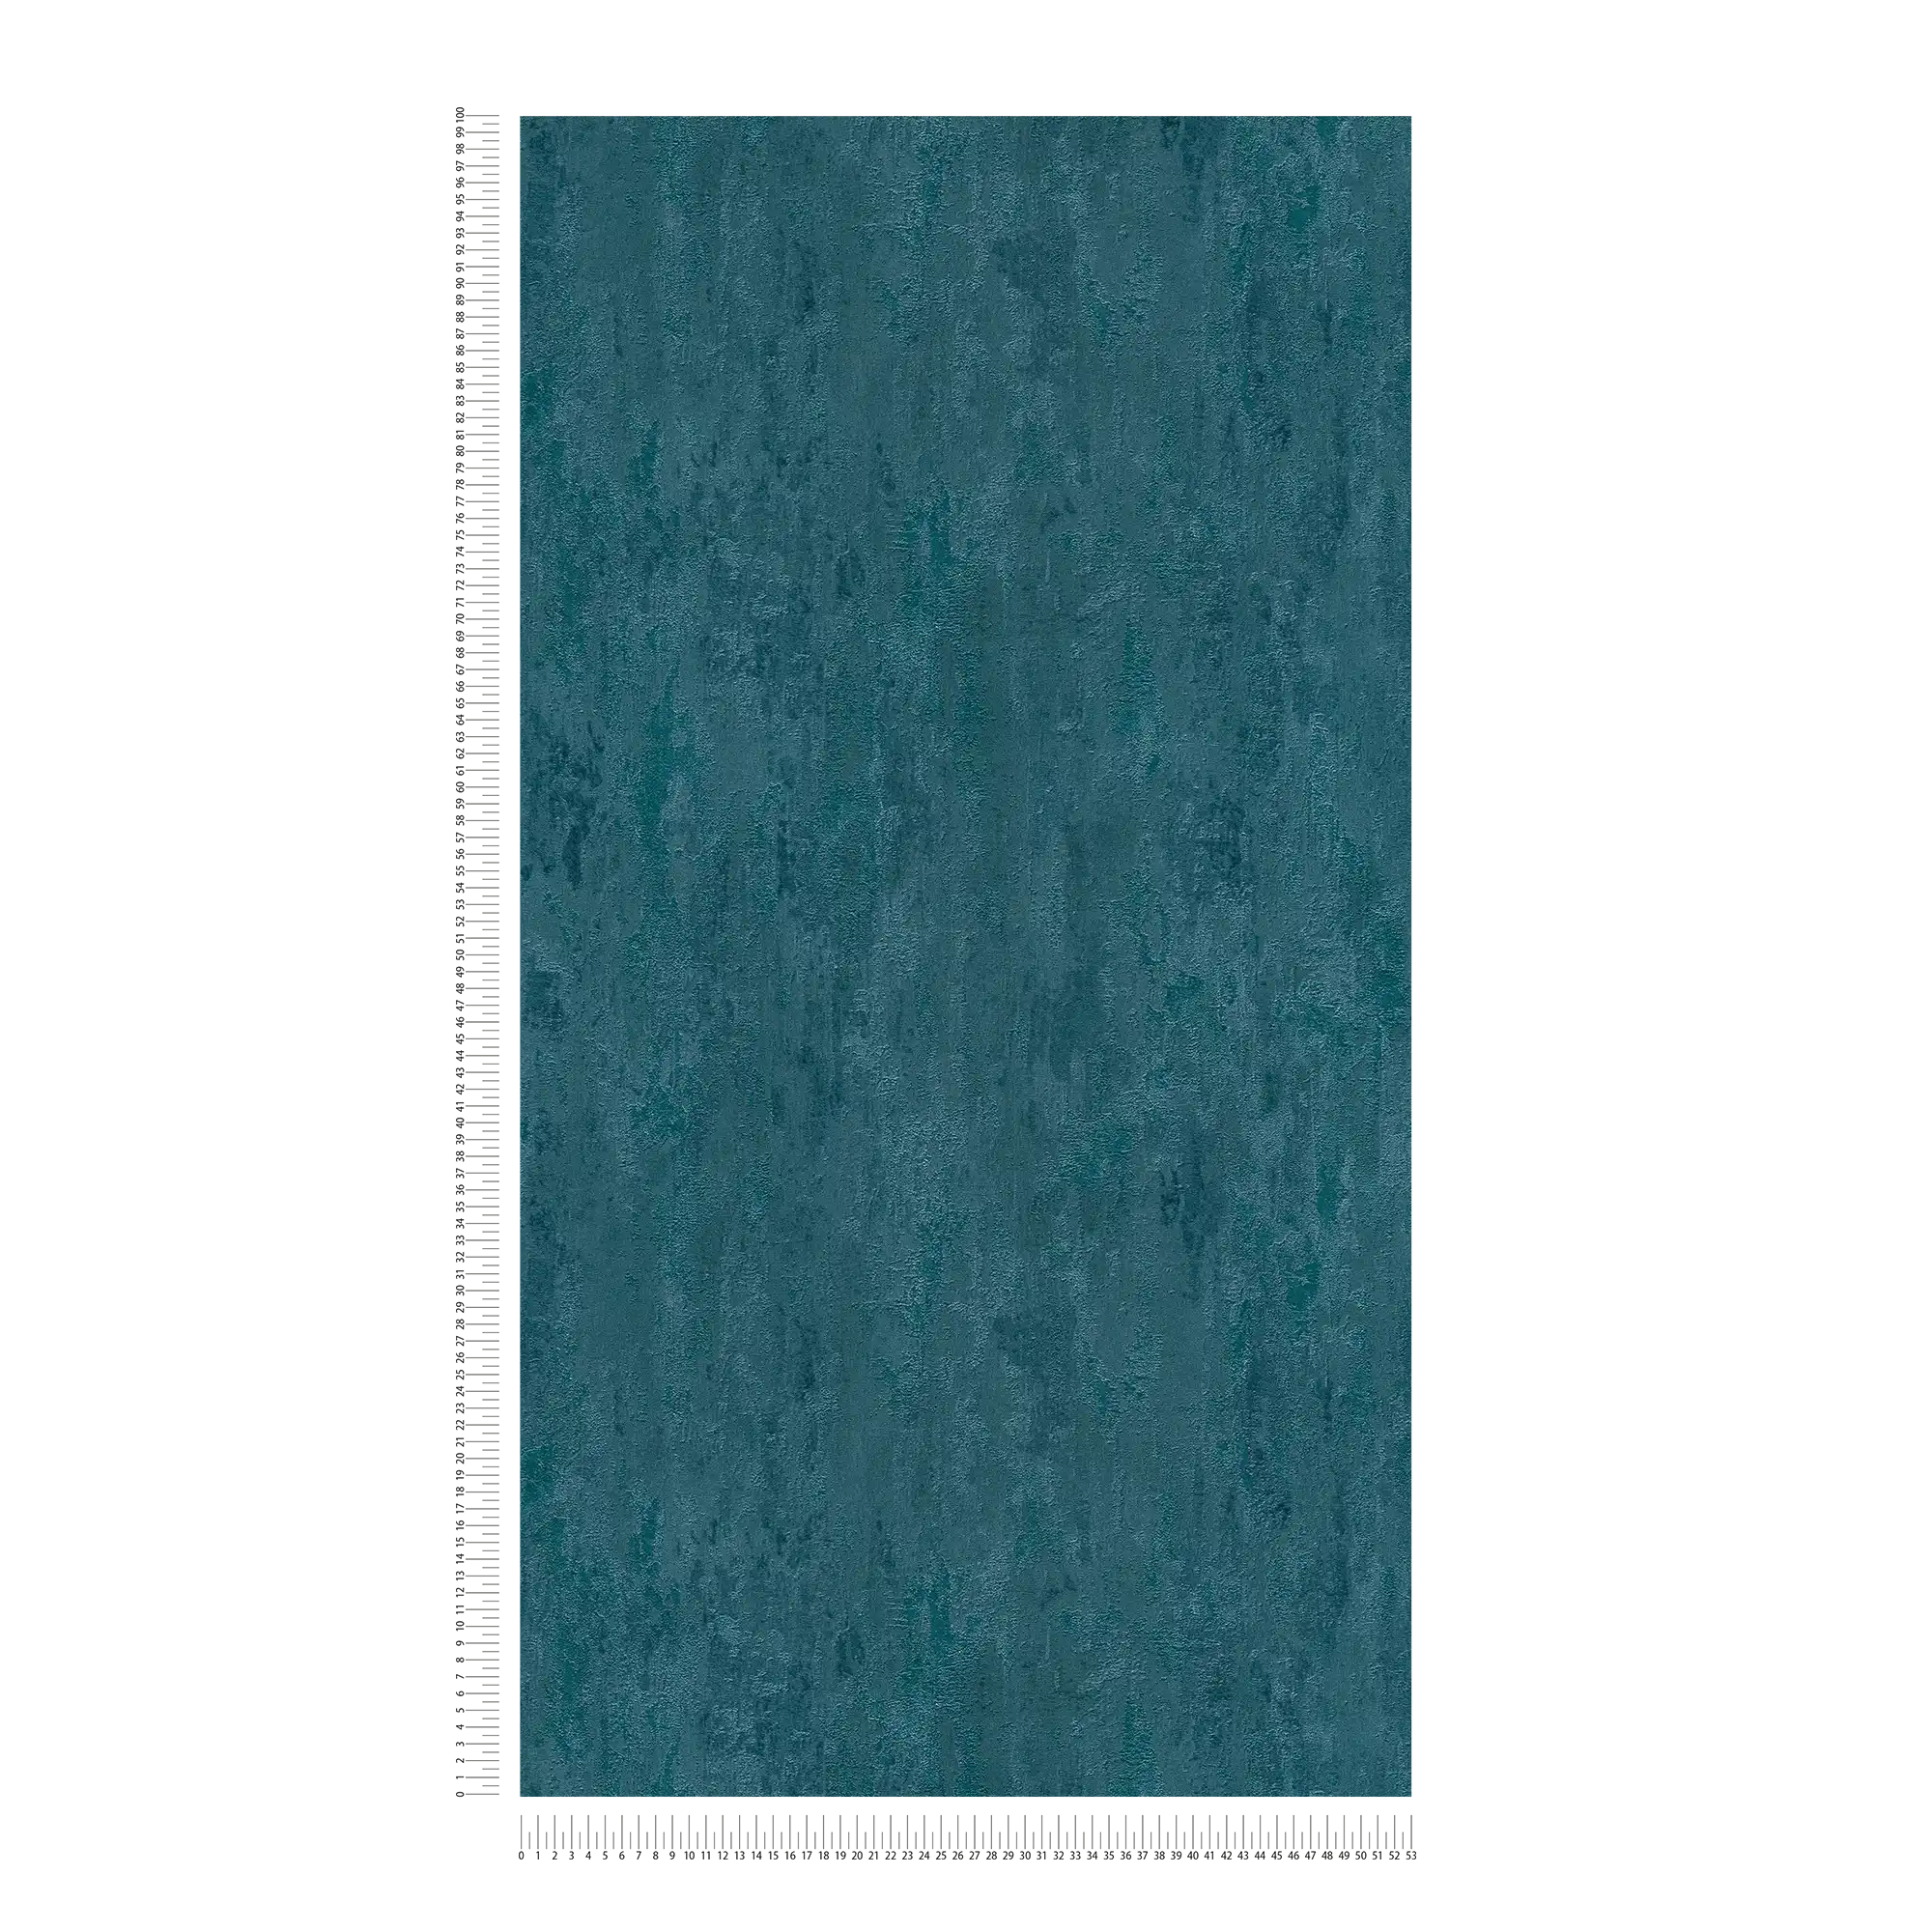             behangpapier industriële stijl met textuureffect - blauw, metallic
        